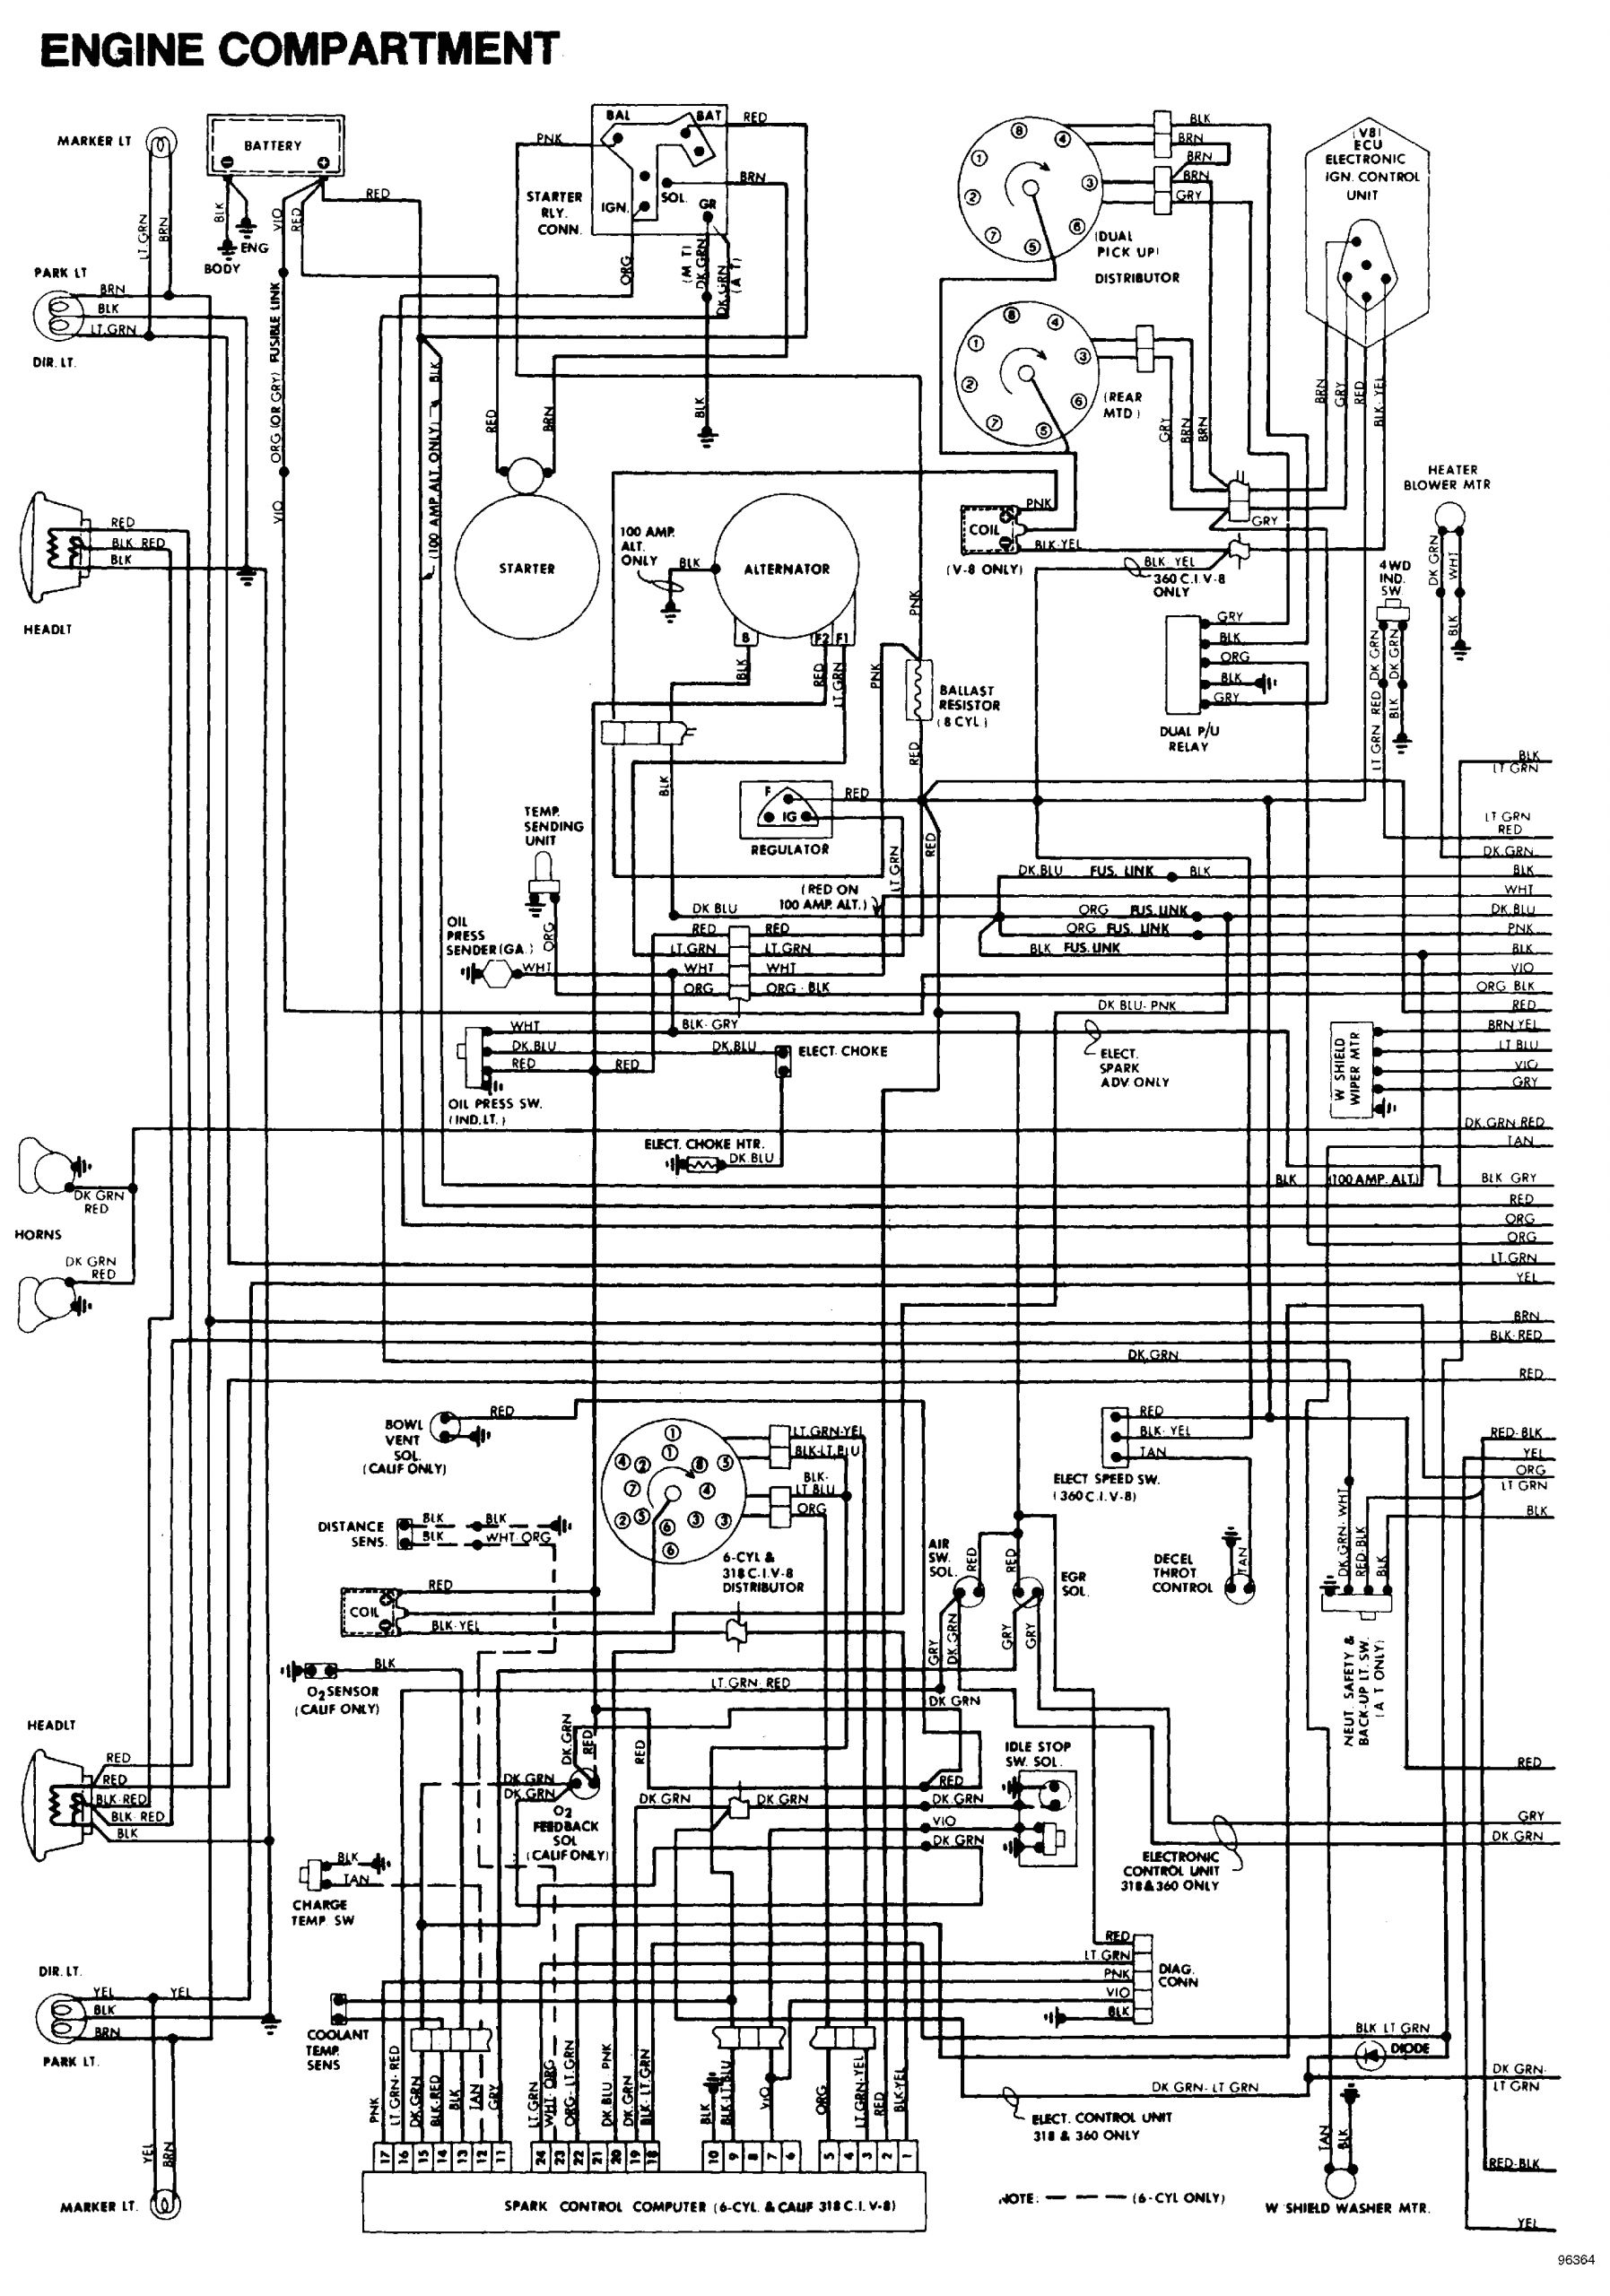 1993 Dodge W250 Headlight Wiring Diagram 1993 Dodge W250 Wiring Diagram Free Wiring Diagram